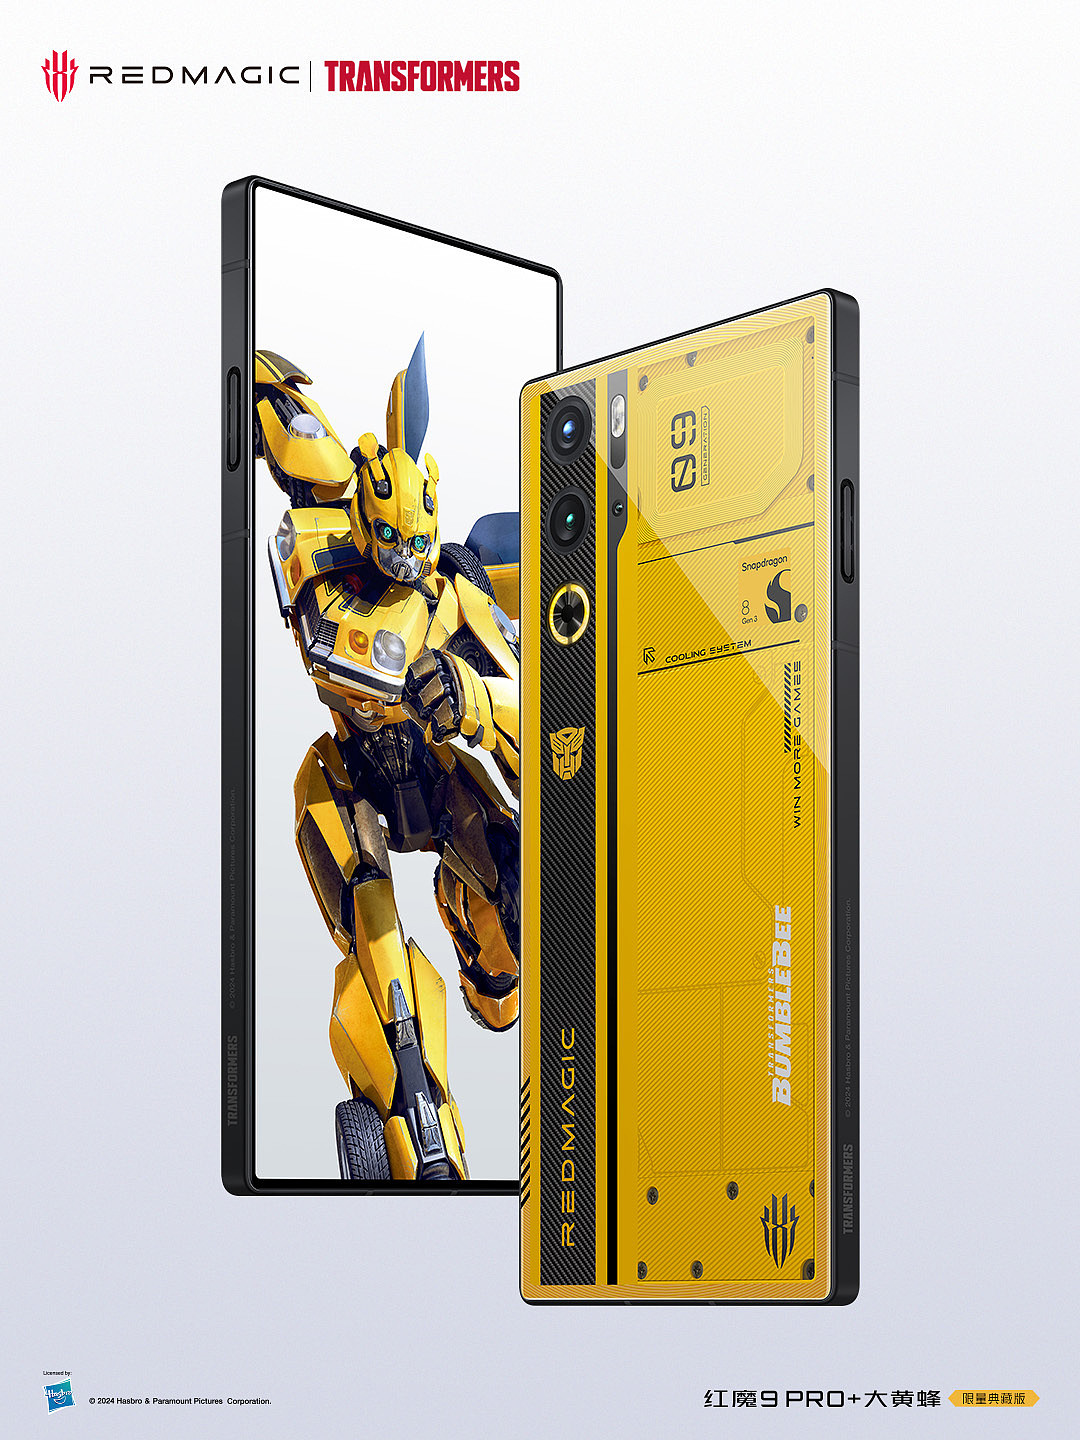 6499 元，红魔 9 Pro + 变形金刚大黄蜂限量版手机发布，深度定制配件 - 2